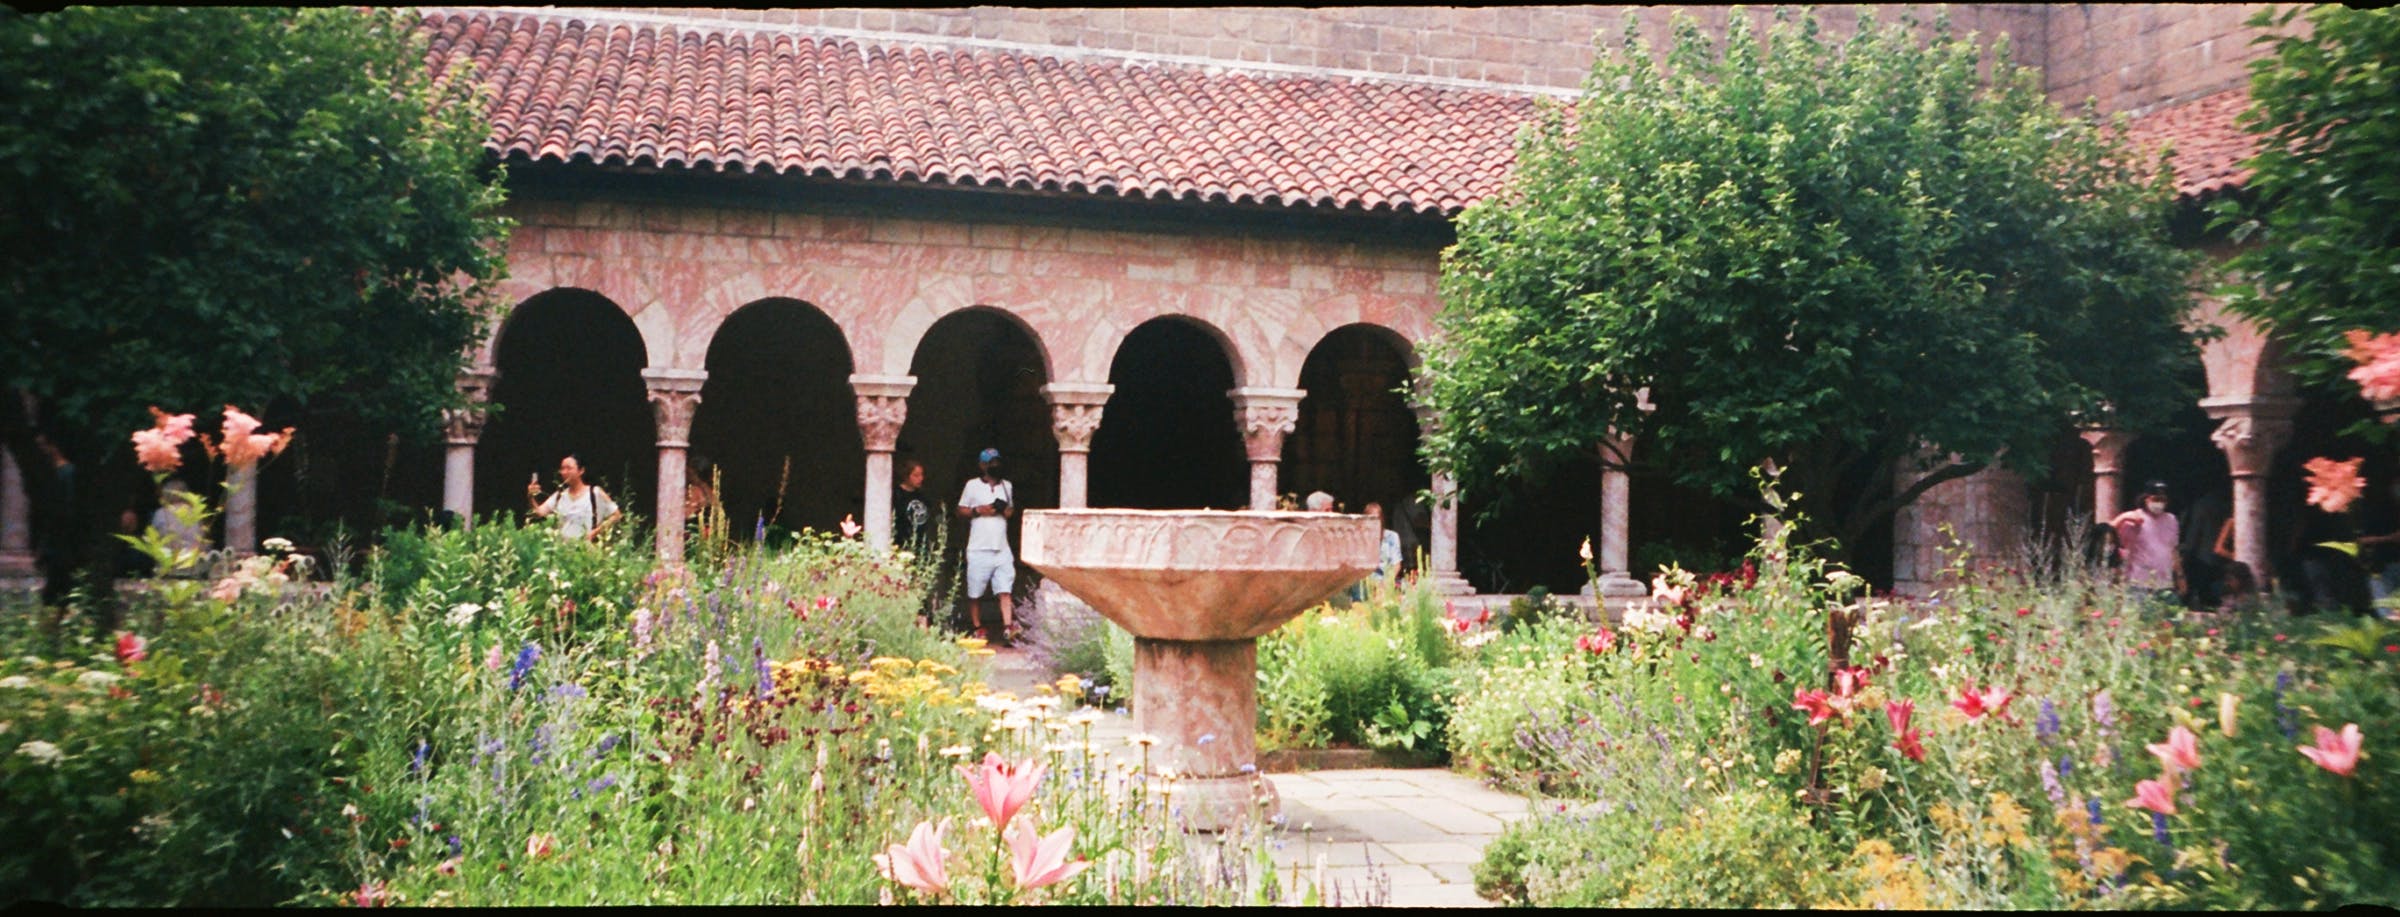 The Met Cloisters Garden